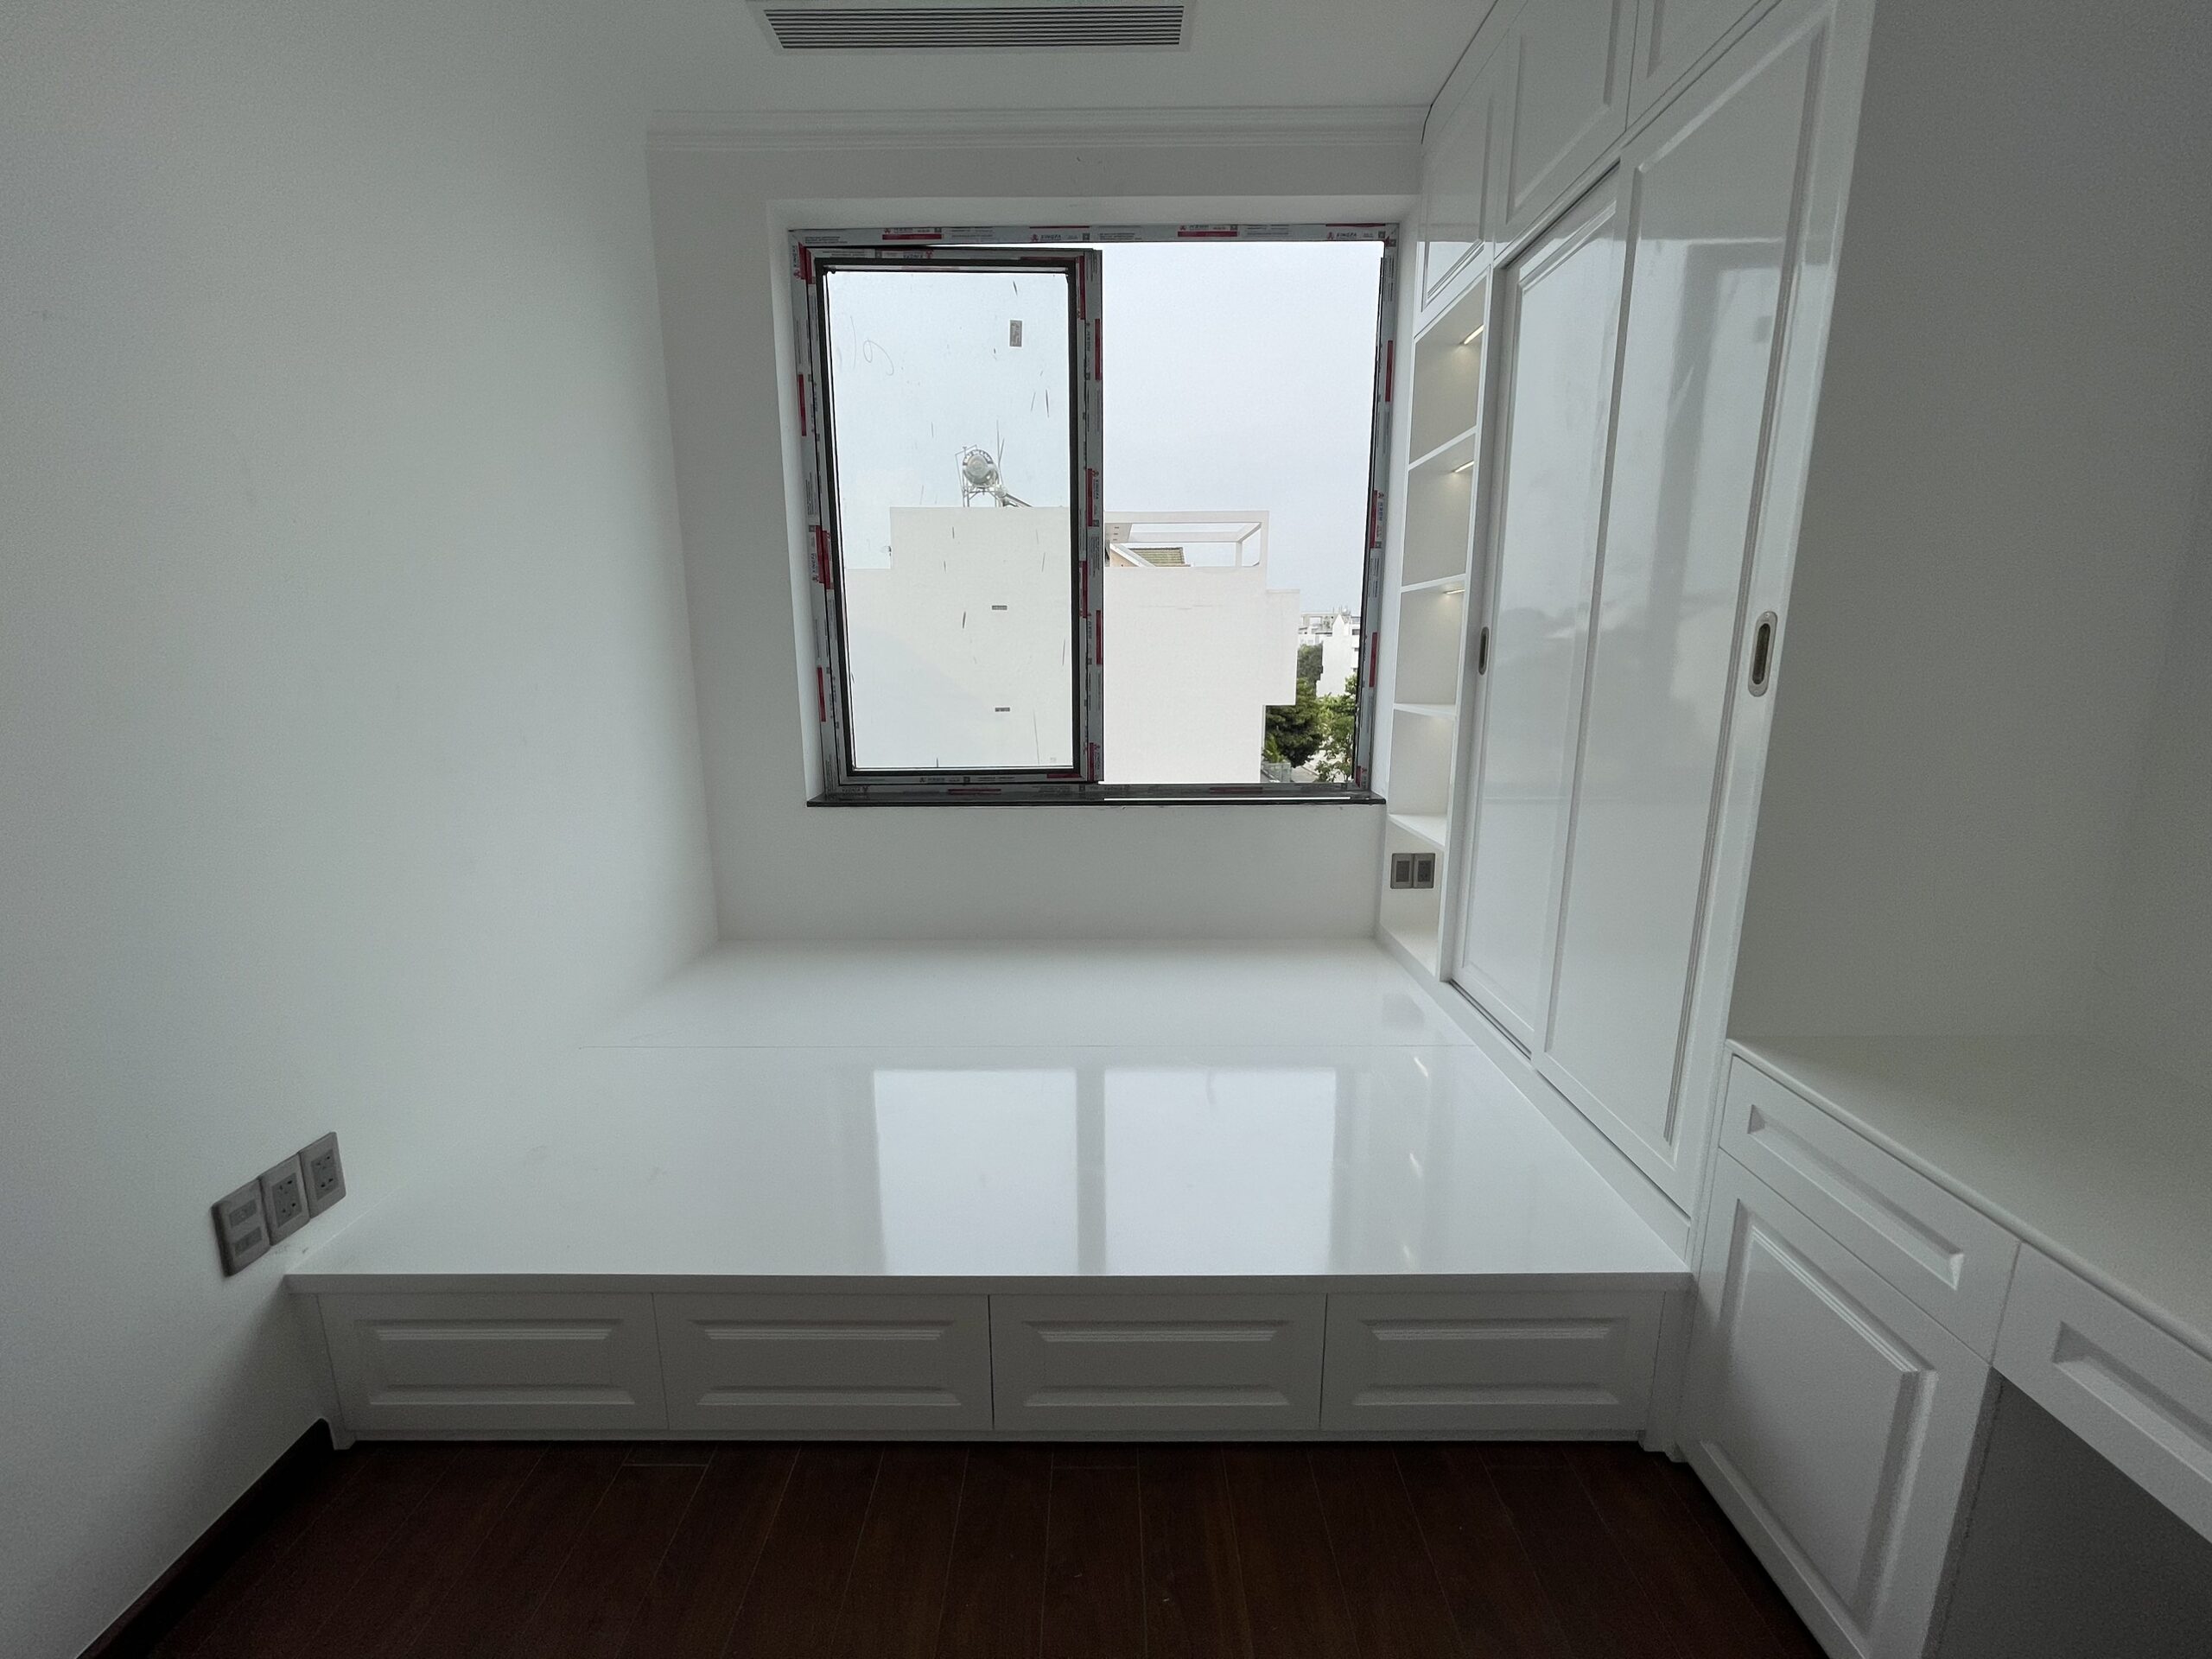 Thiết kế nội thất phòng khách hiện đại nhà anh Hùng - Hạ Long